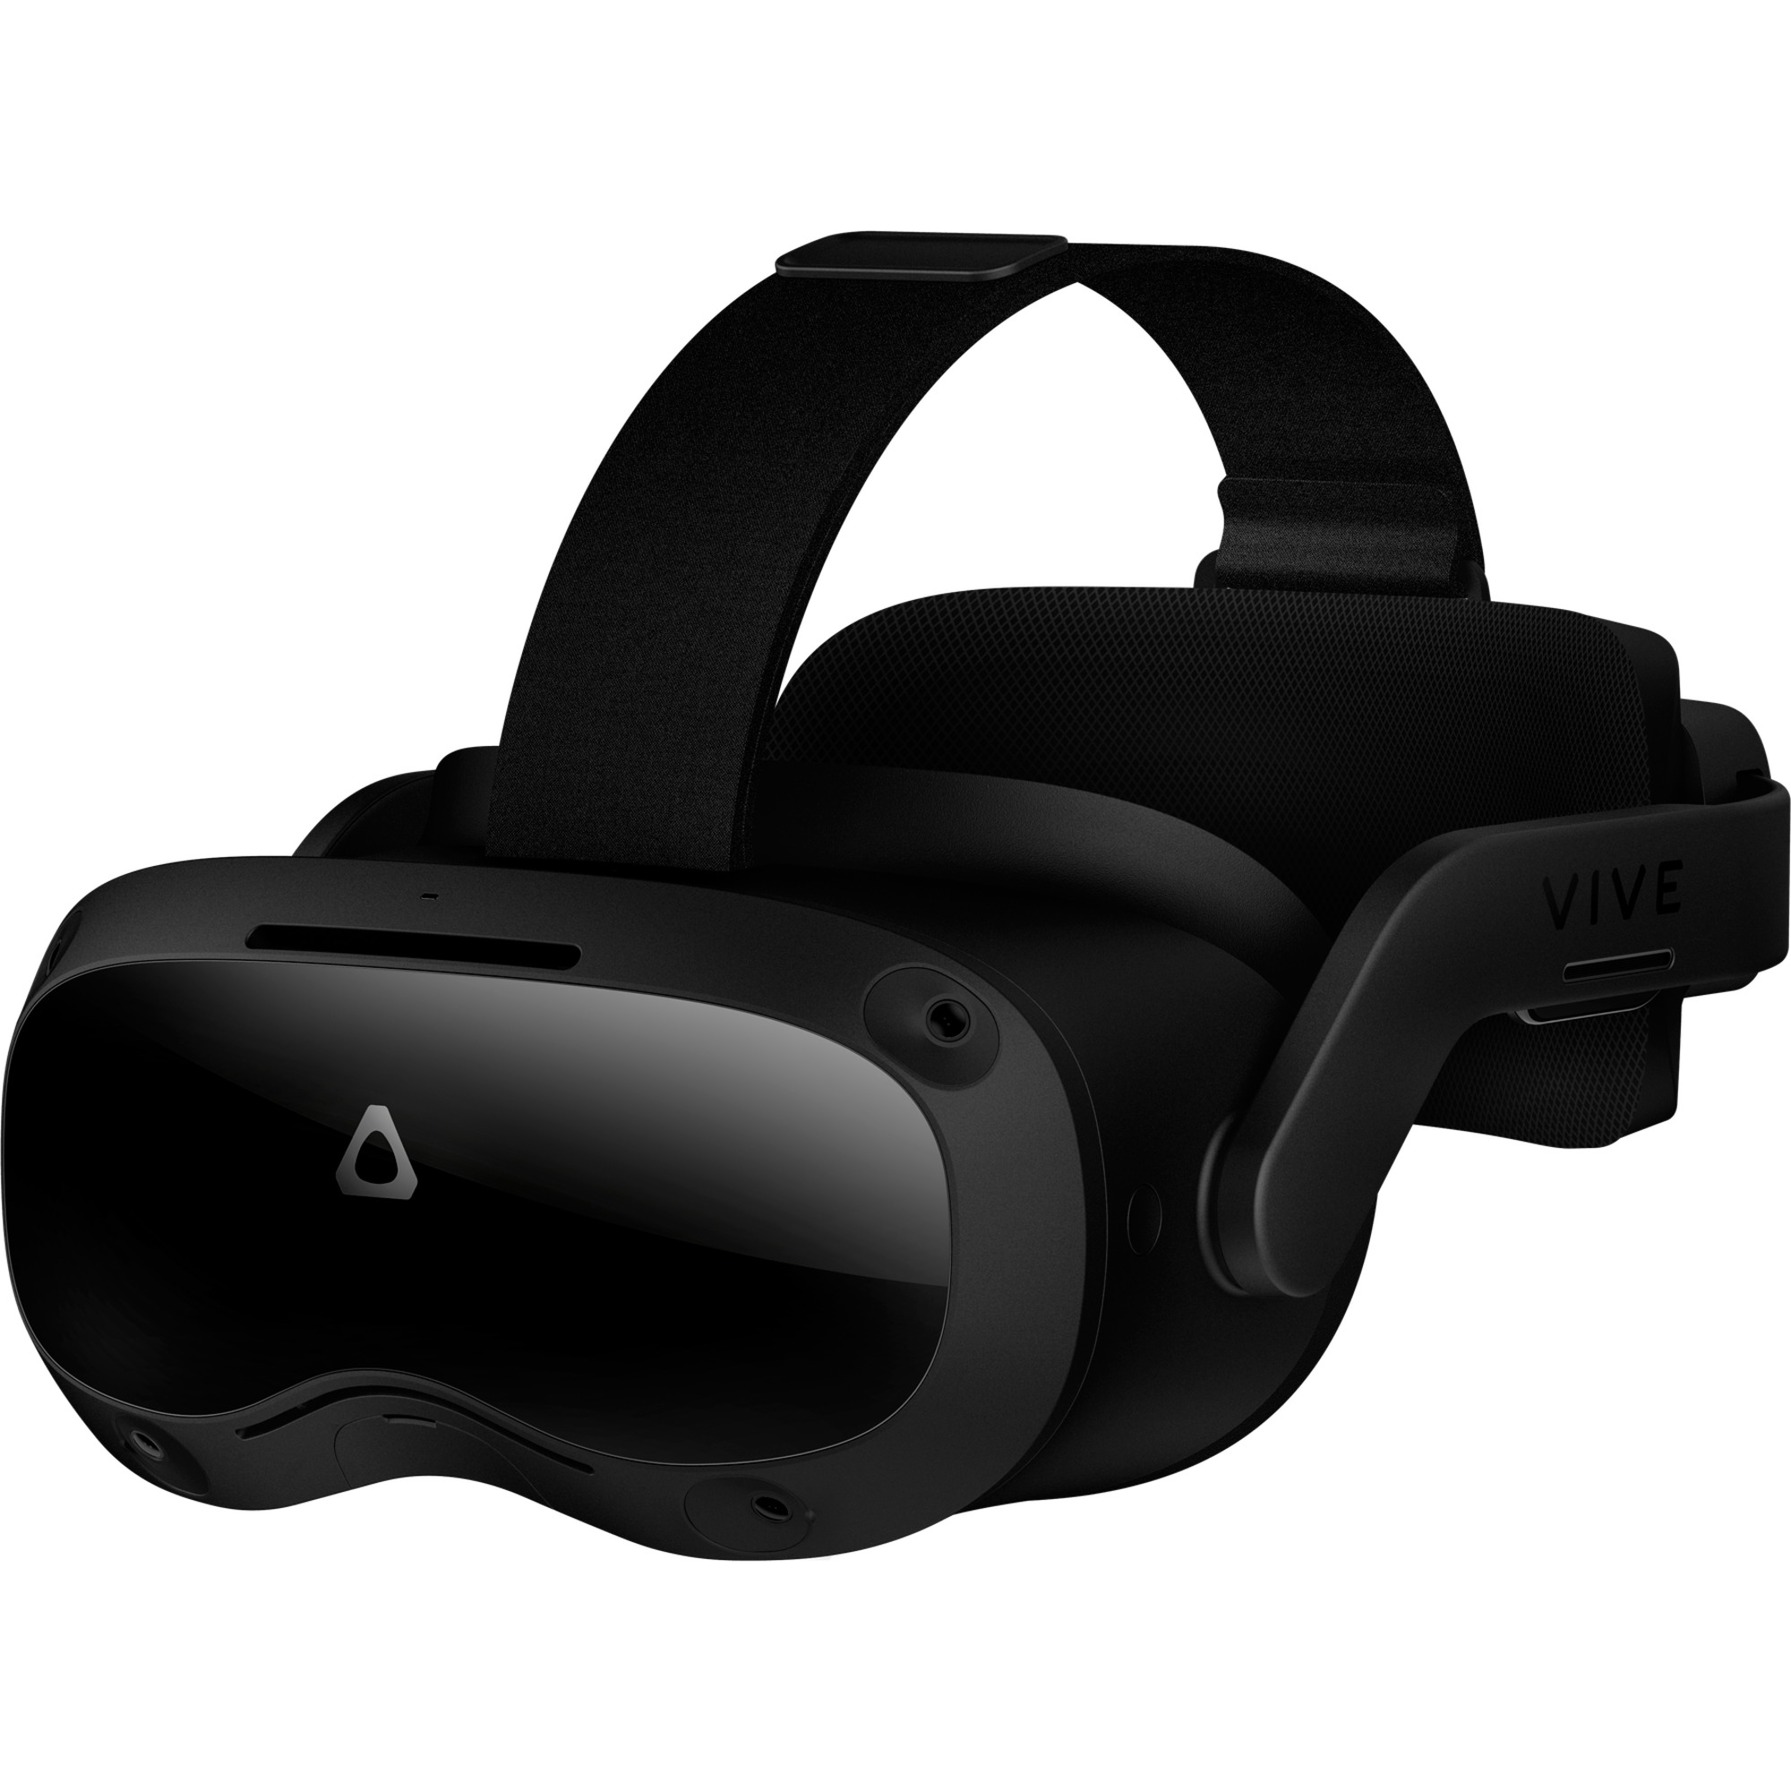 Image of Alternate - Vive Focus 3, VR-Brille online einkaufen bei Alternate